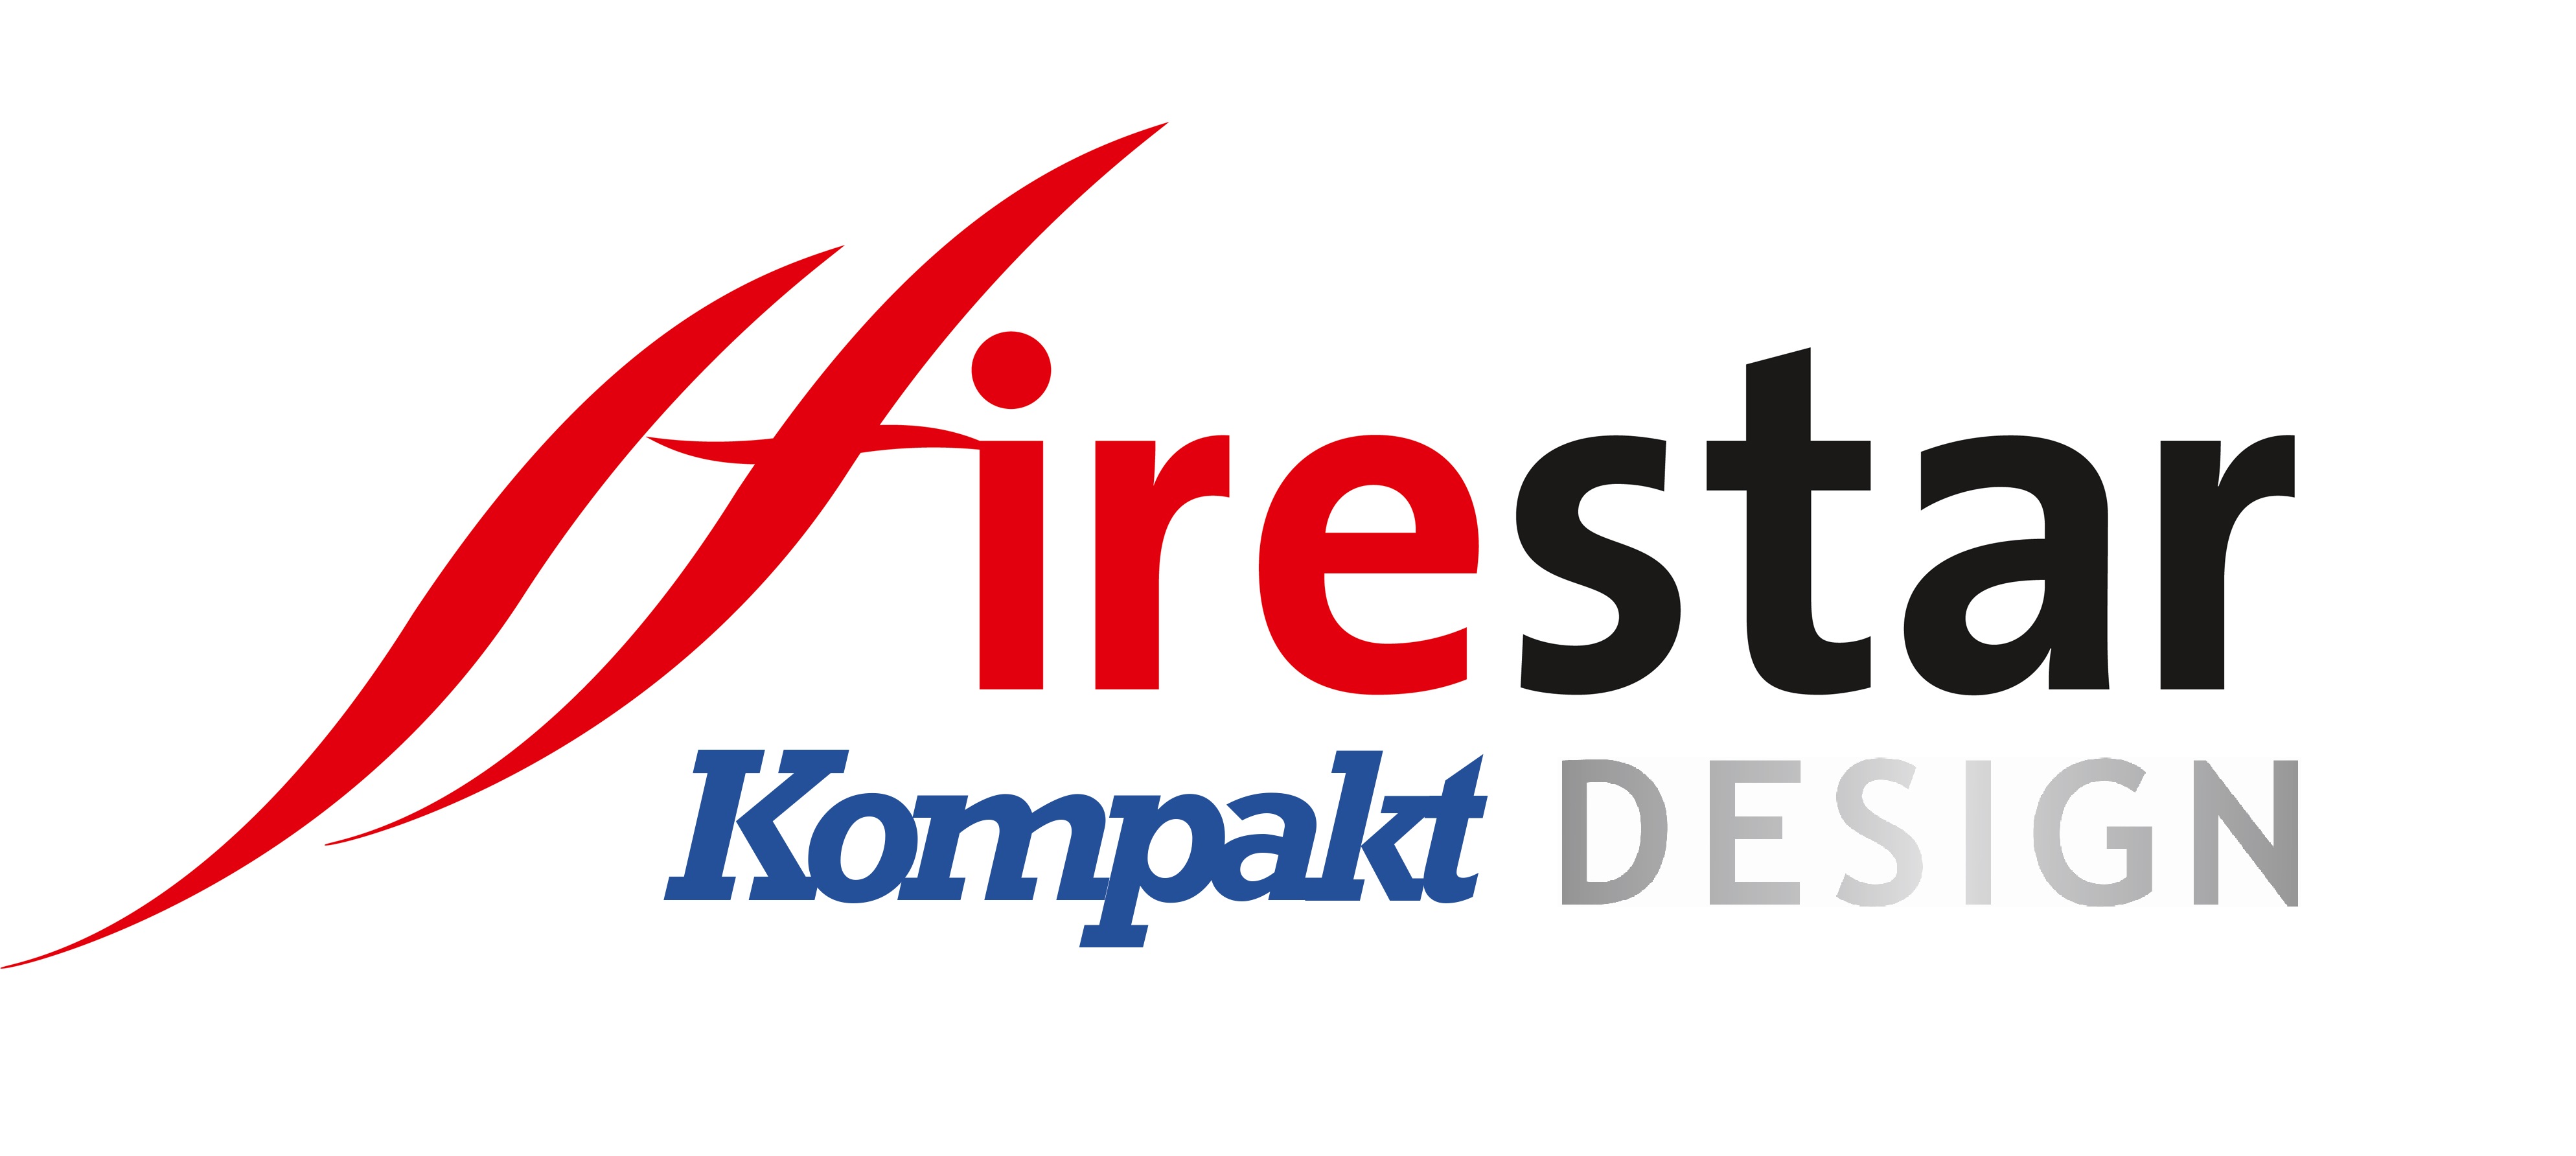 Firestar kompakt design